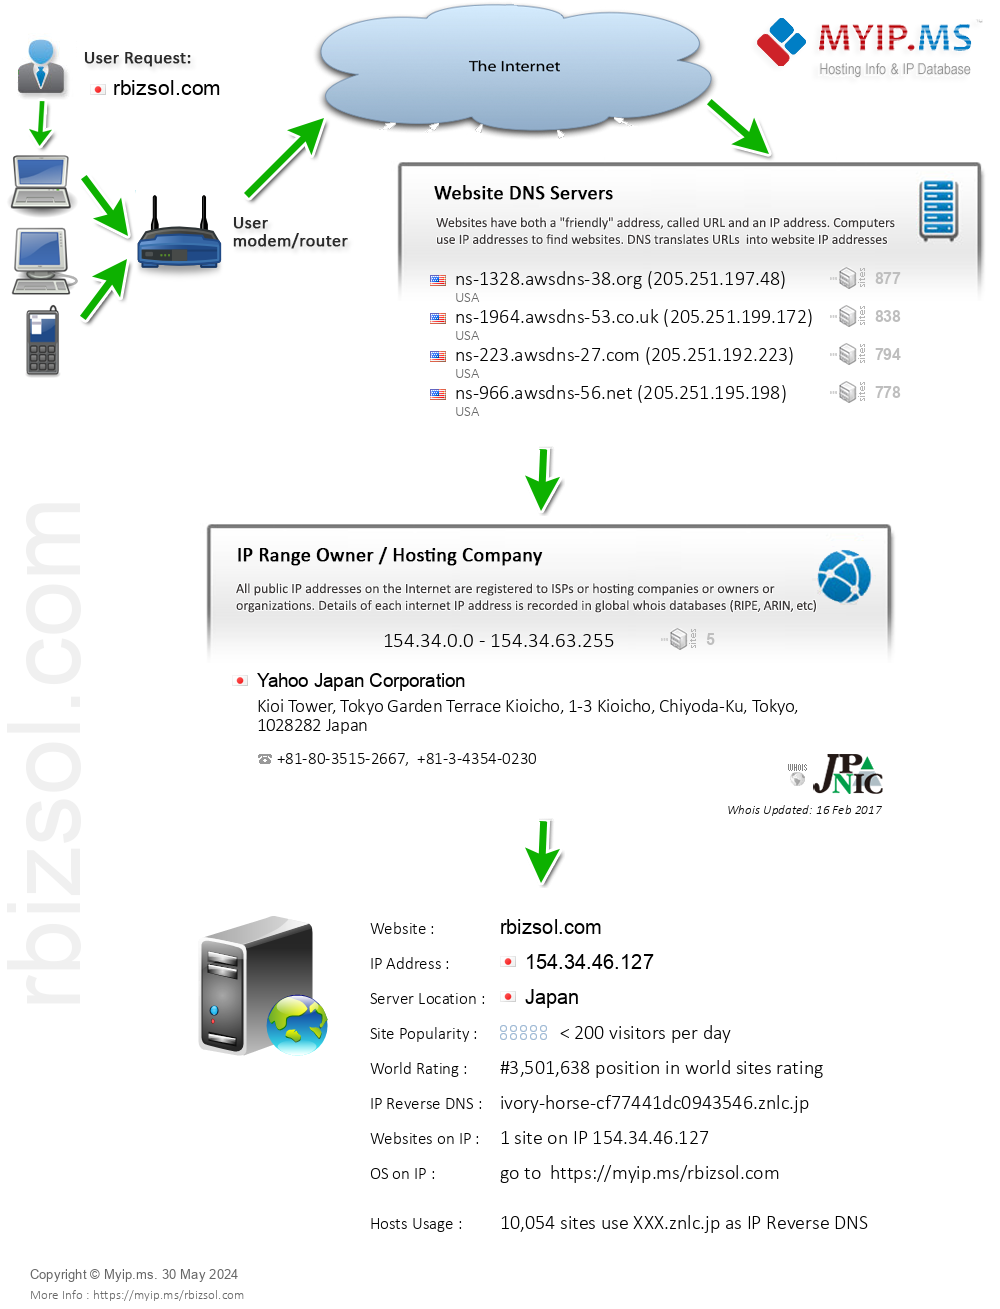 Rbizsol.com - Website Hosting Visual IP Diagram